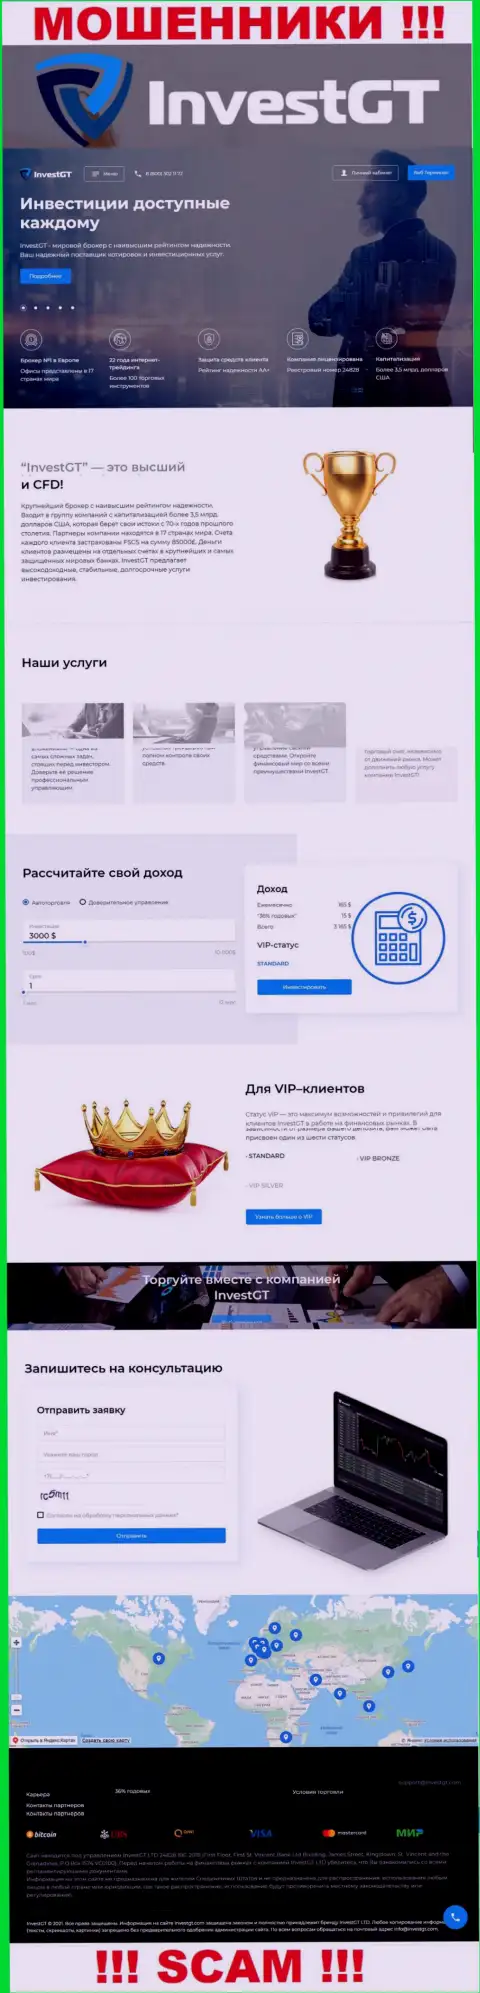 InvestGT Com - веб-страница мошенников Инвест ГТ